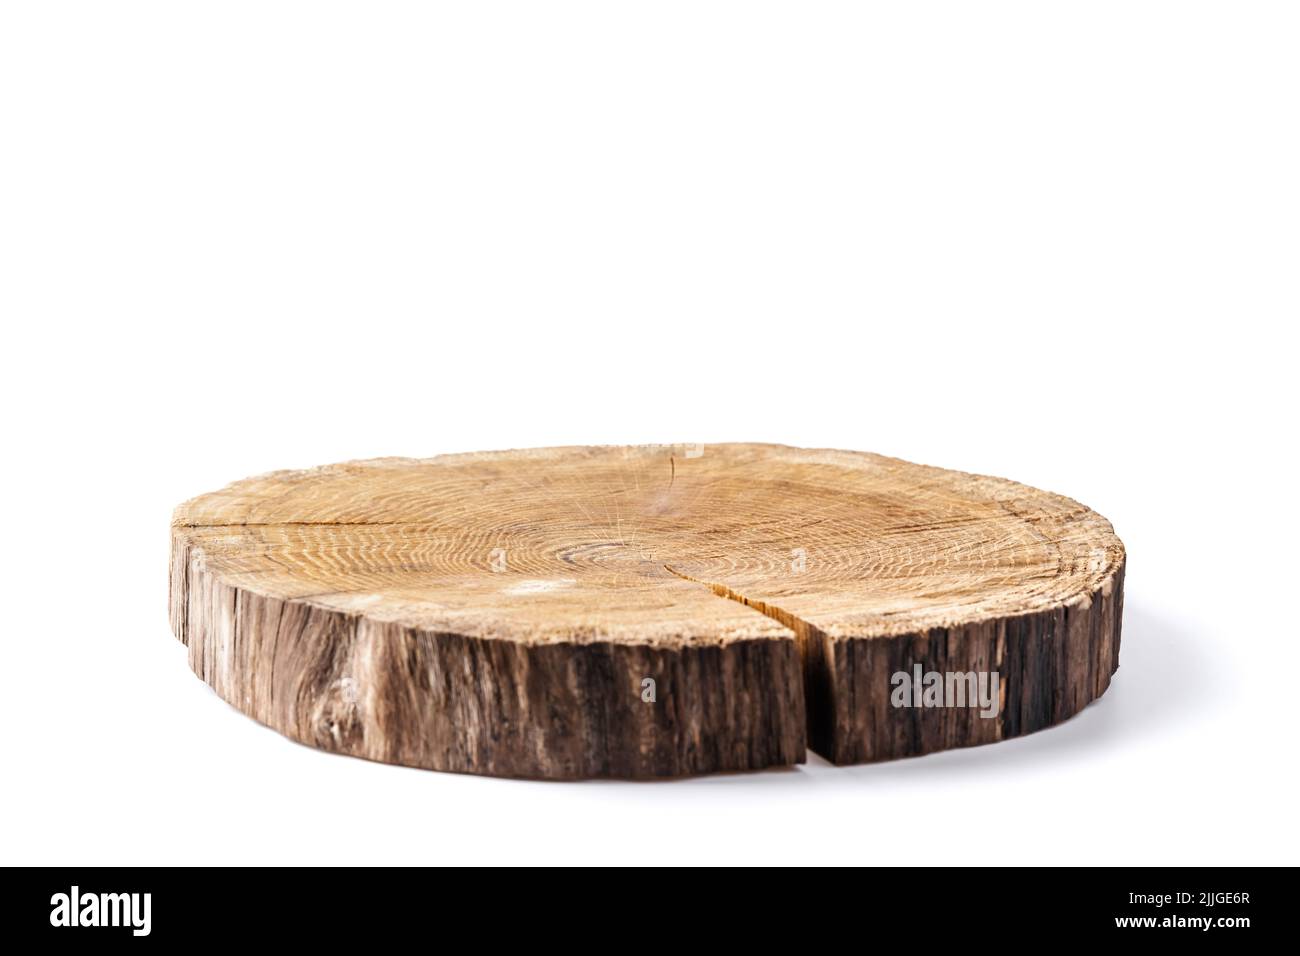 Placa de madera tallada en tronco de árbol aislado sobre fondo blanco. Se puede utilizar como soporte para el objeto Foto de stock